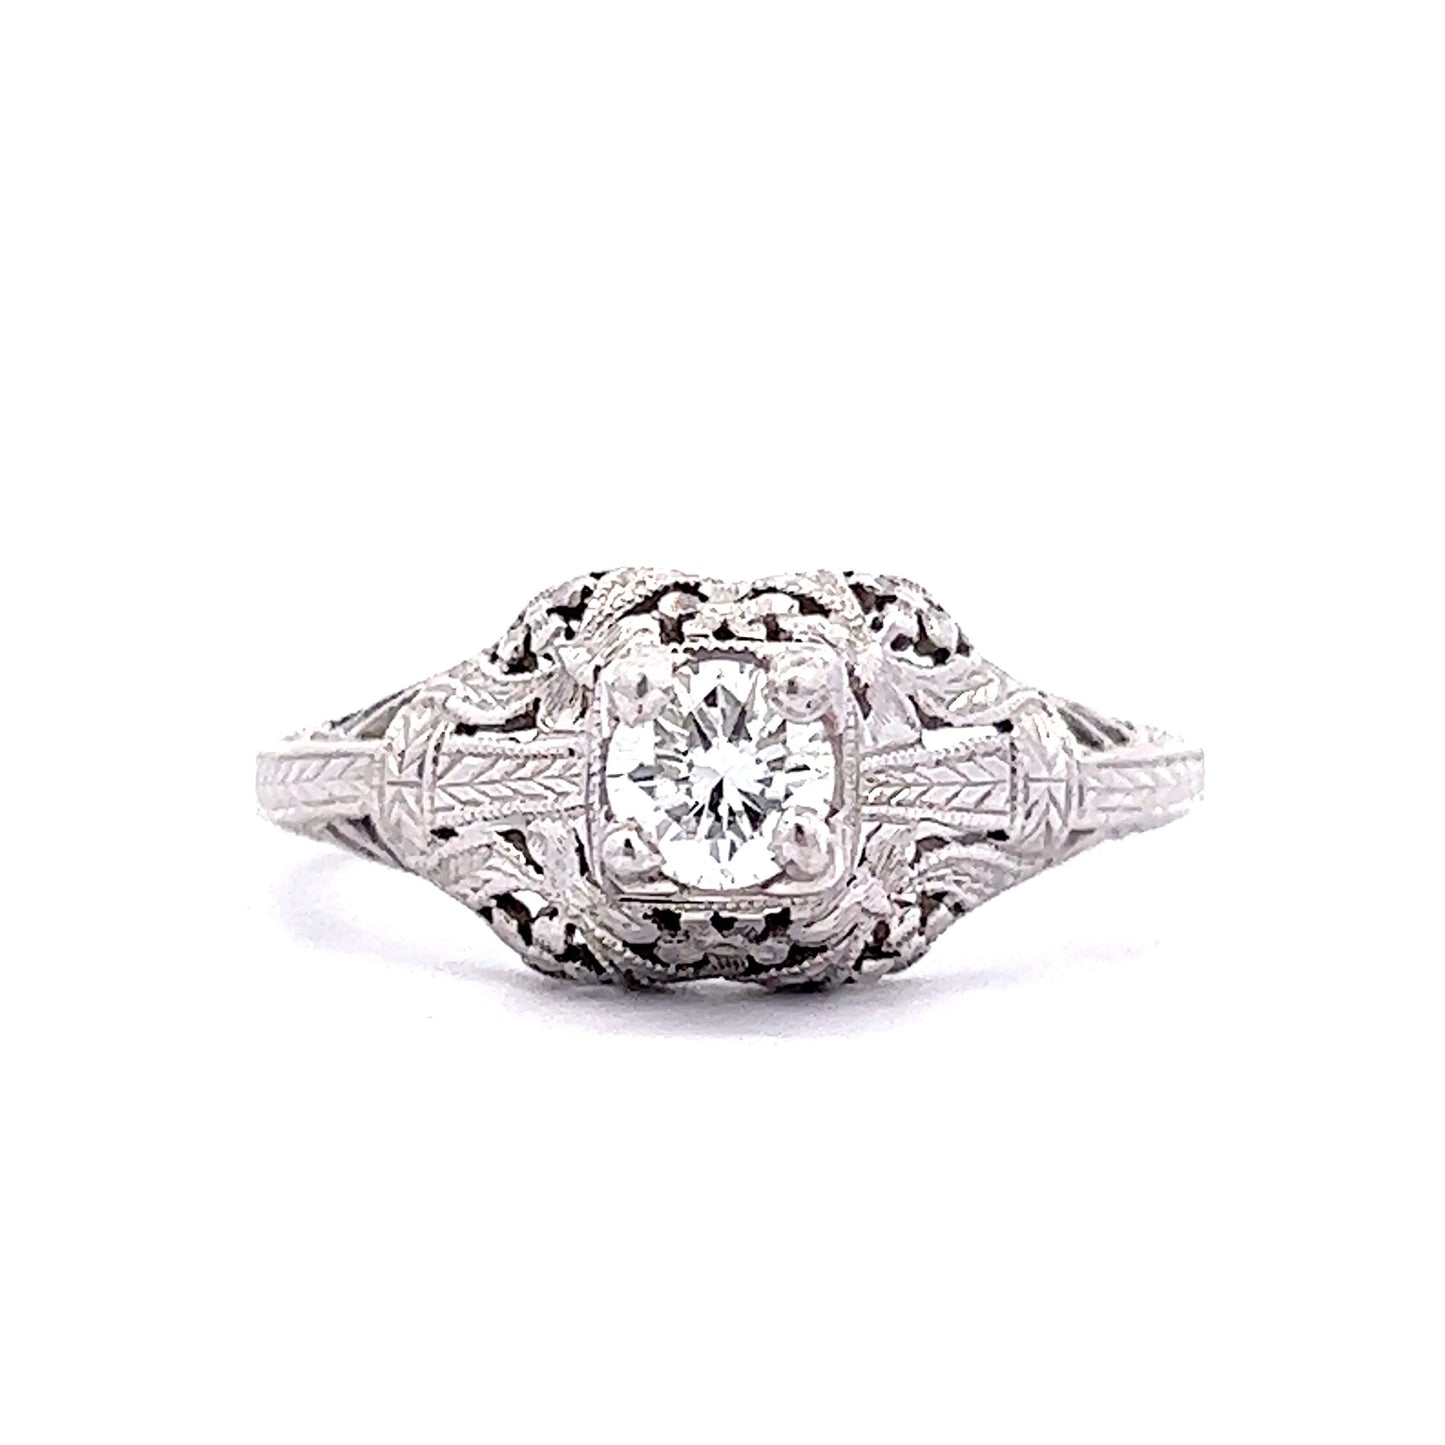 .38 Art Deco Diamond Engagement Ring in 18K White Gold